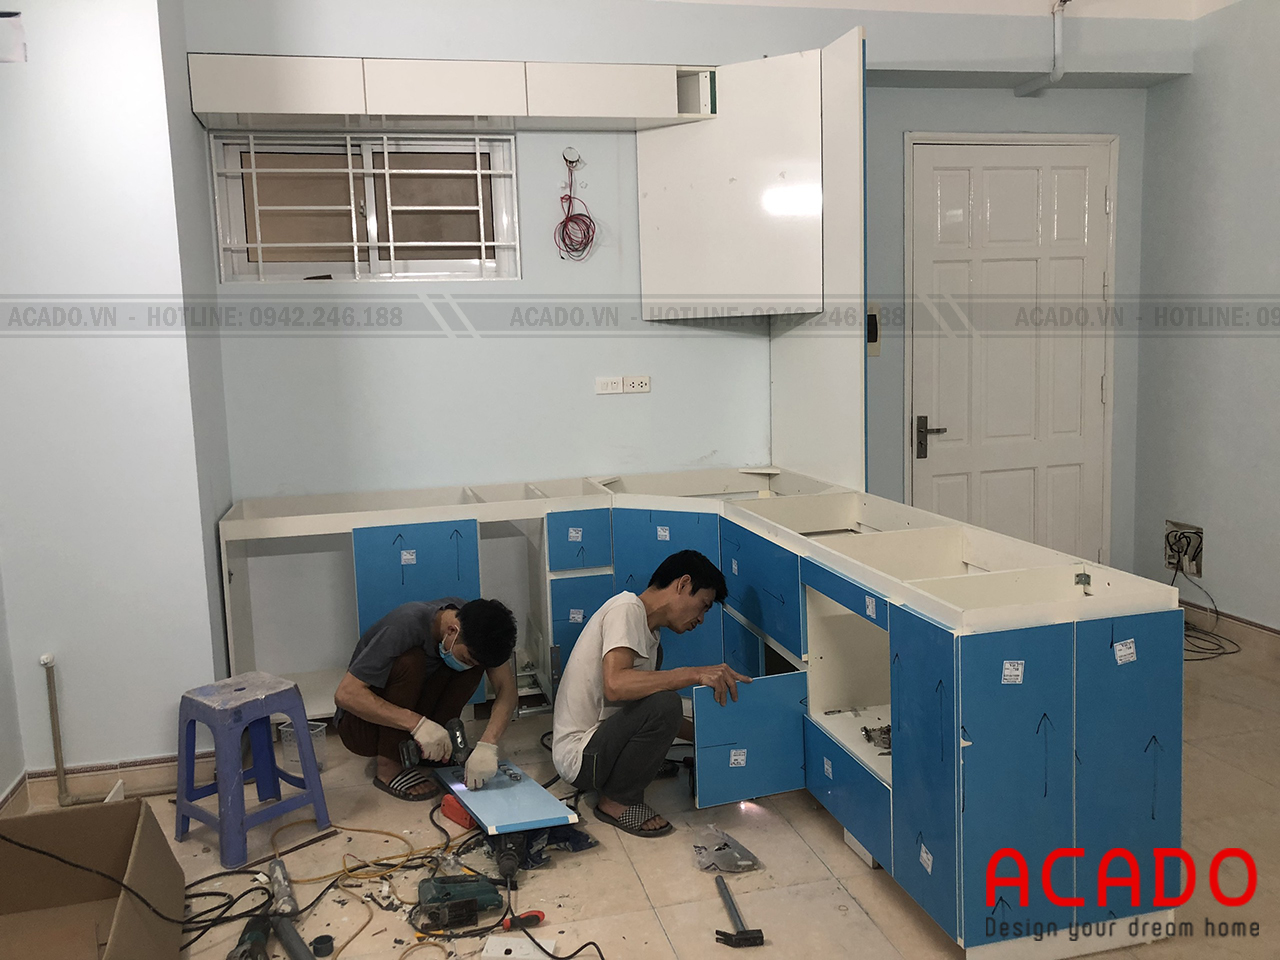 Đội thi công đang lắp đặt tủ bếp cho gia đình chị Minh